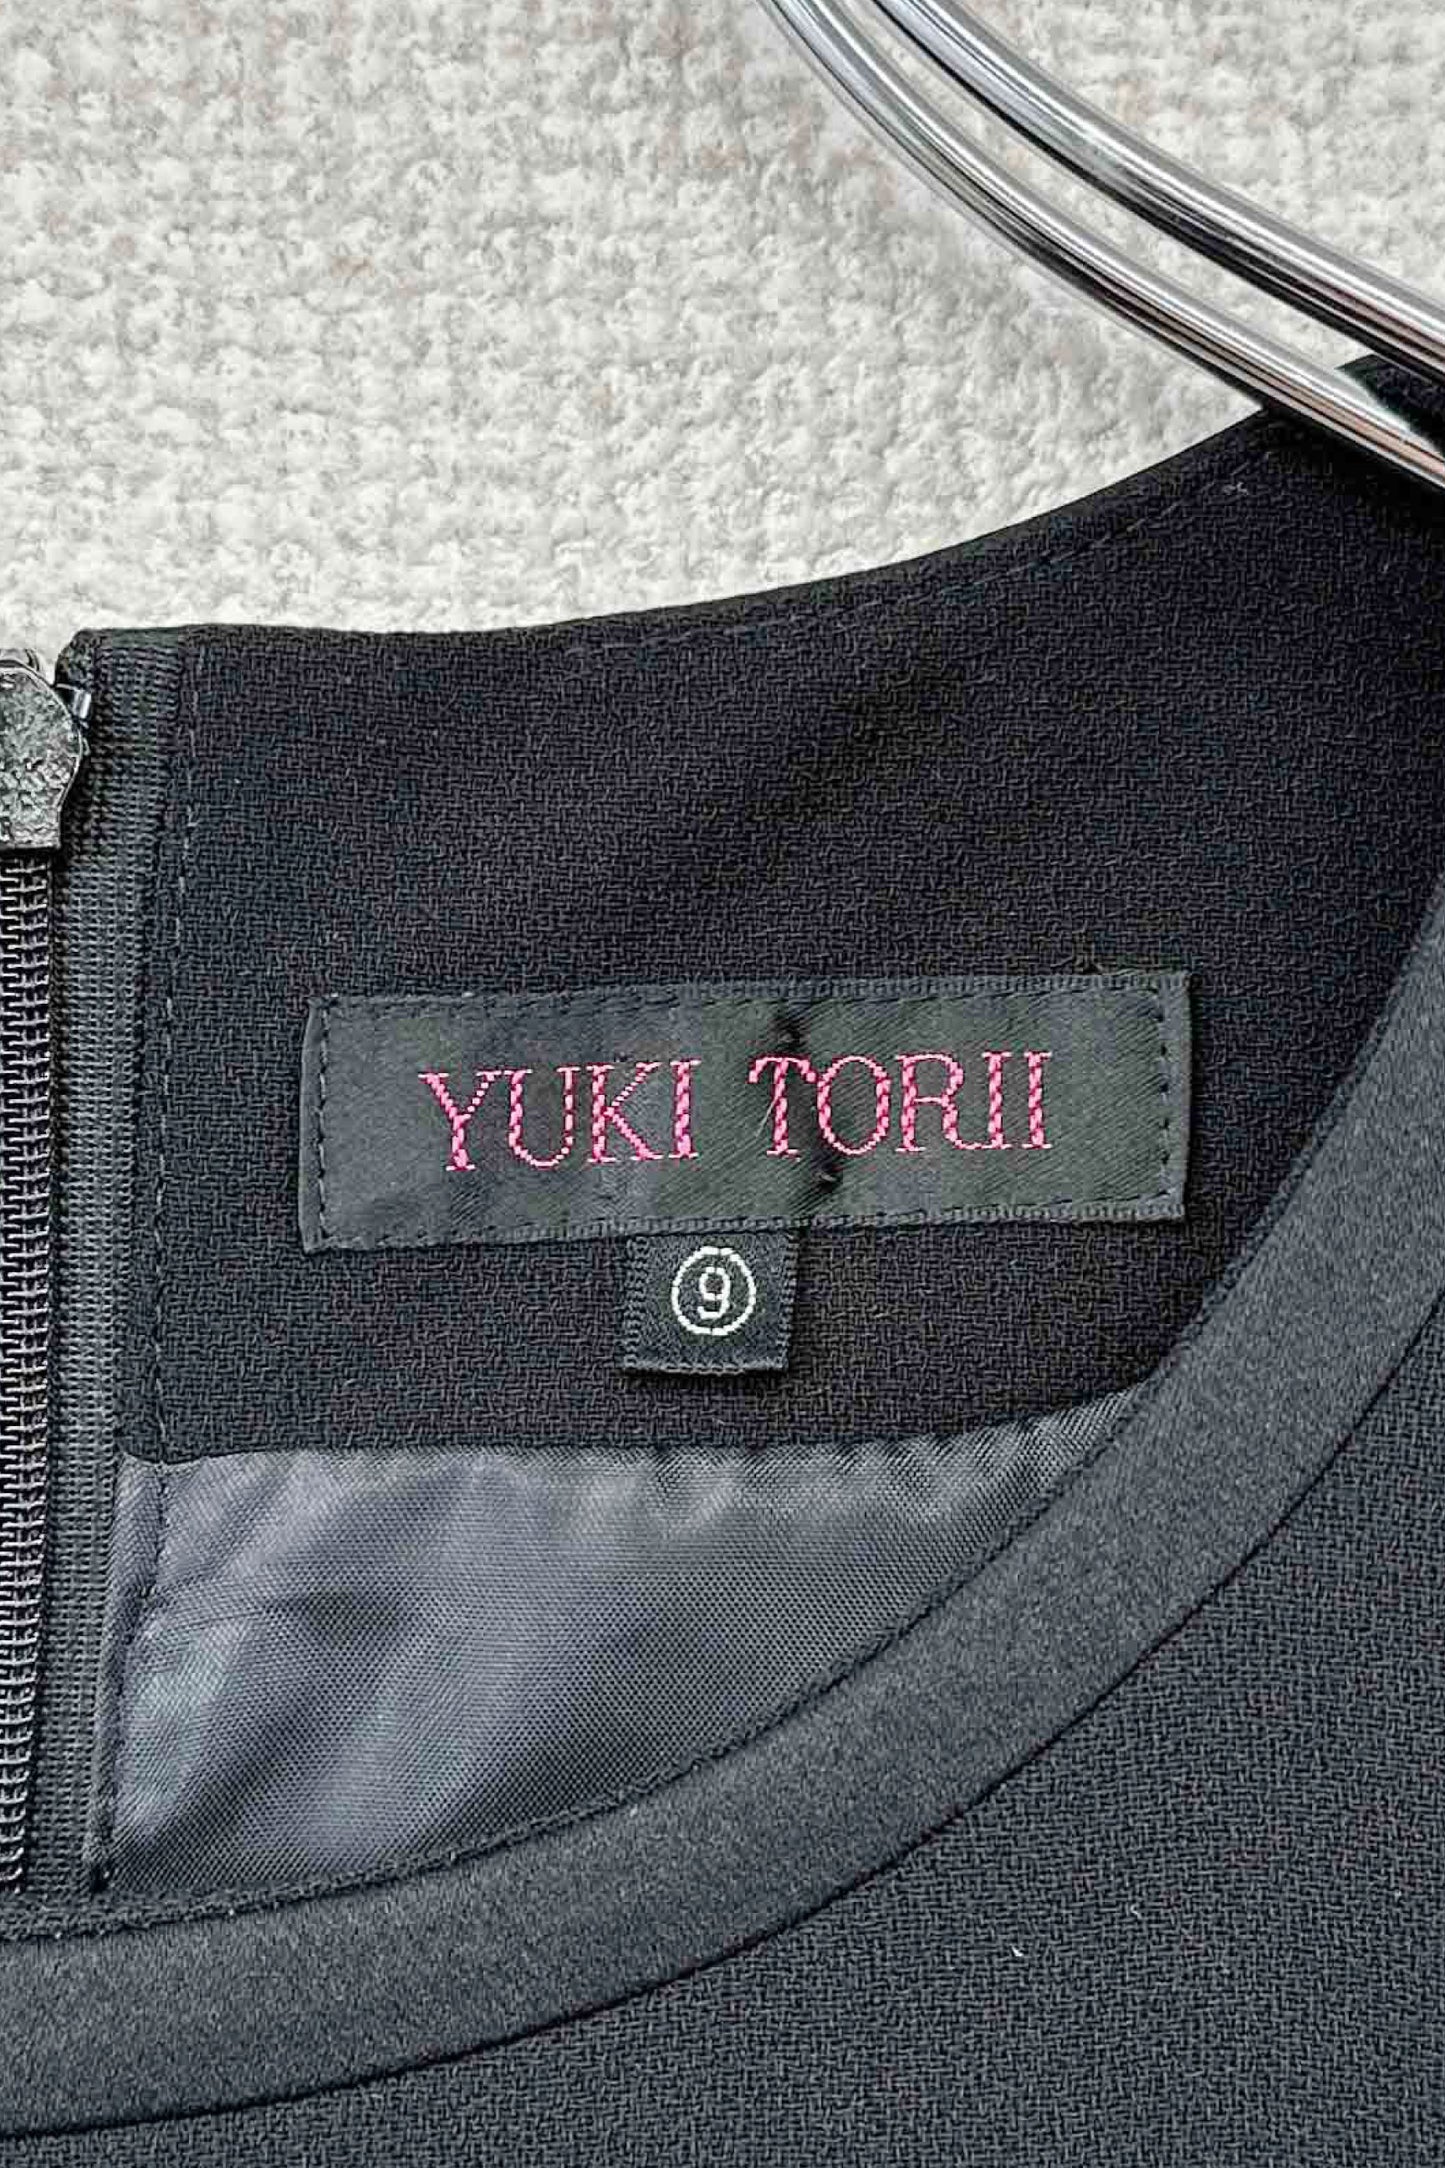 90's YUKI TORII one-piece set up